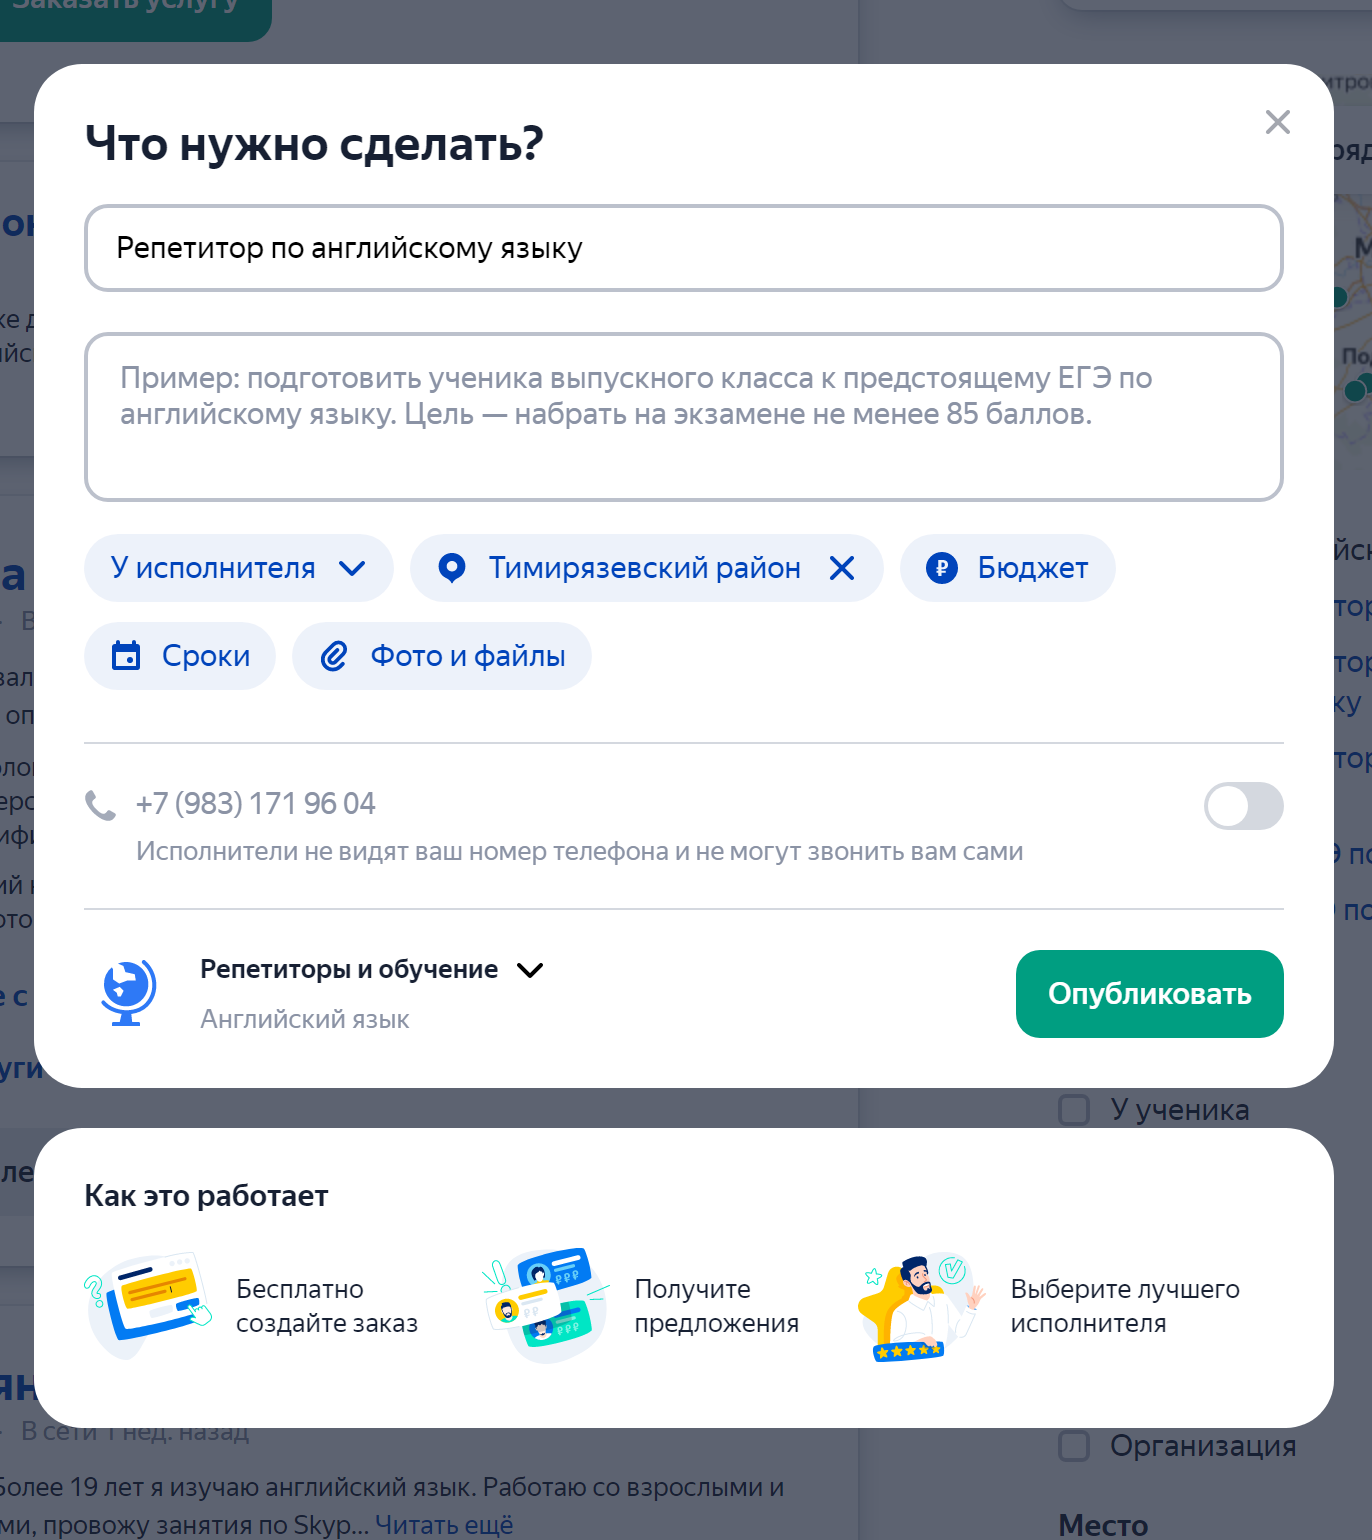 Форма заявки на «Яндекс-услугах» мне нравится больше всего: все параметры собраны на одной странице и нет никаких лишних вопросов